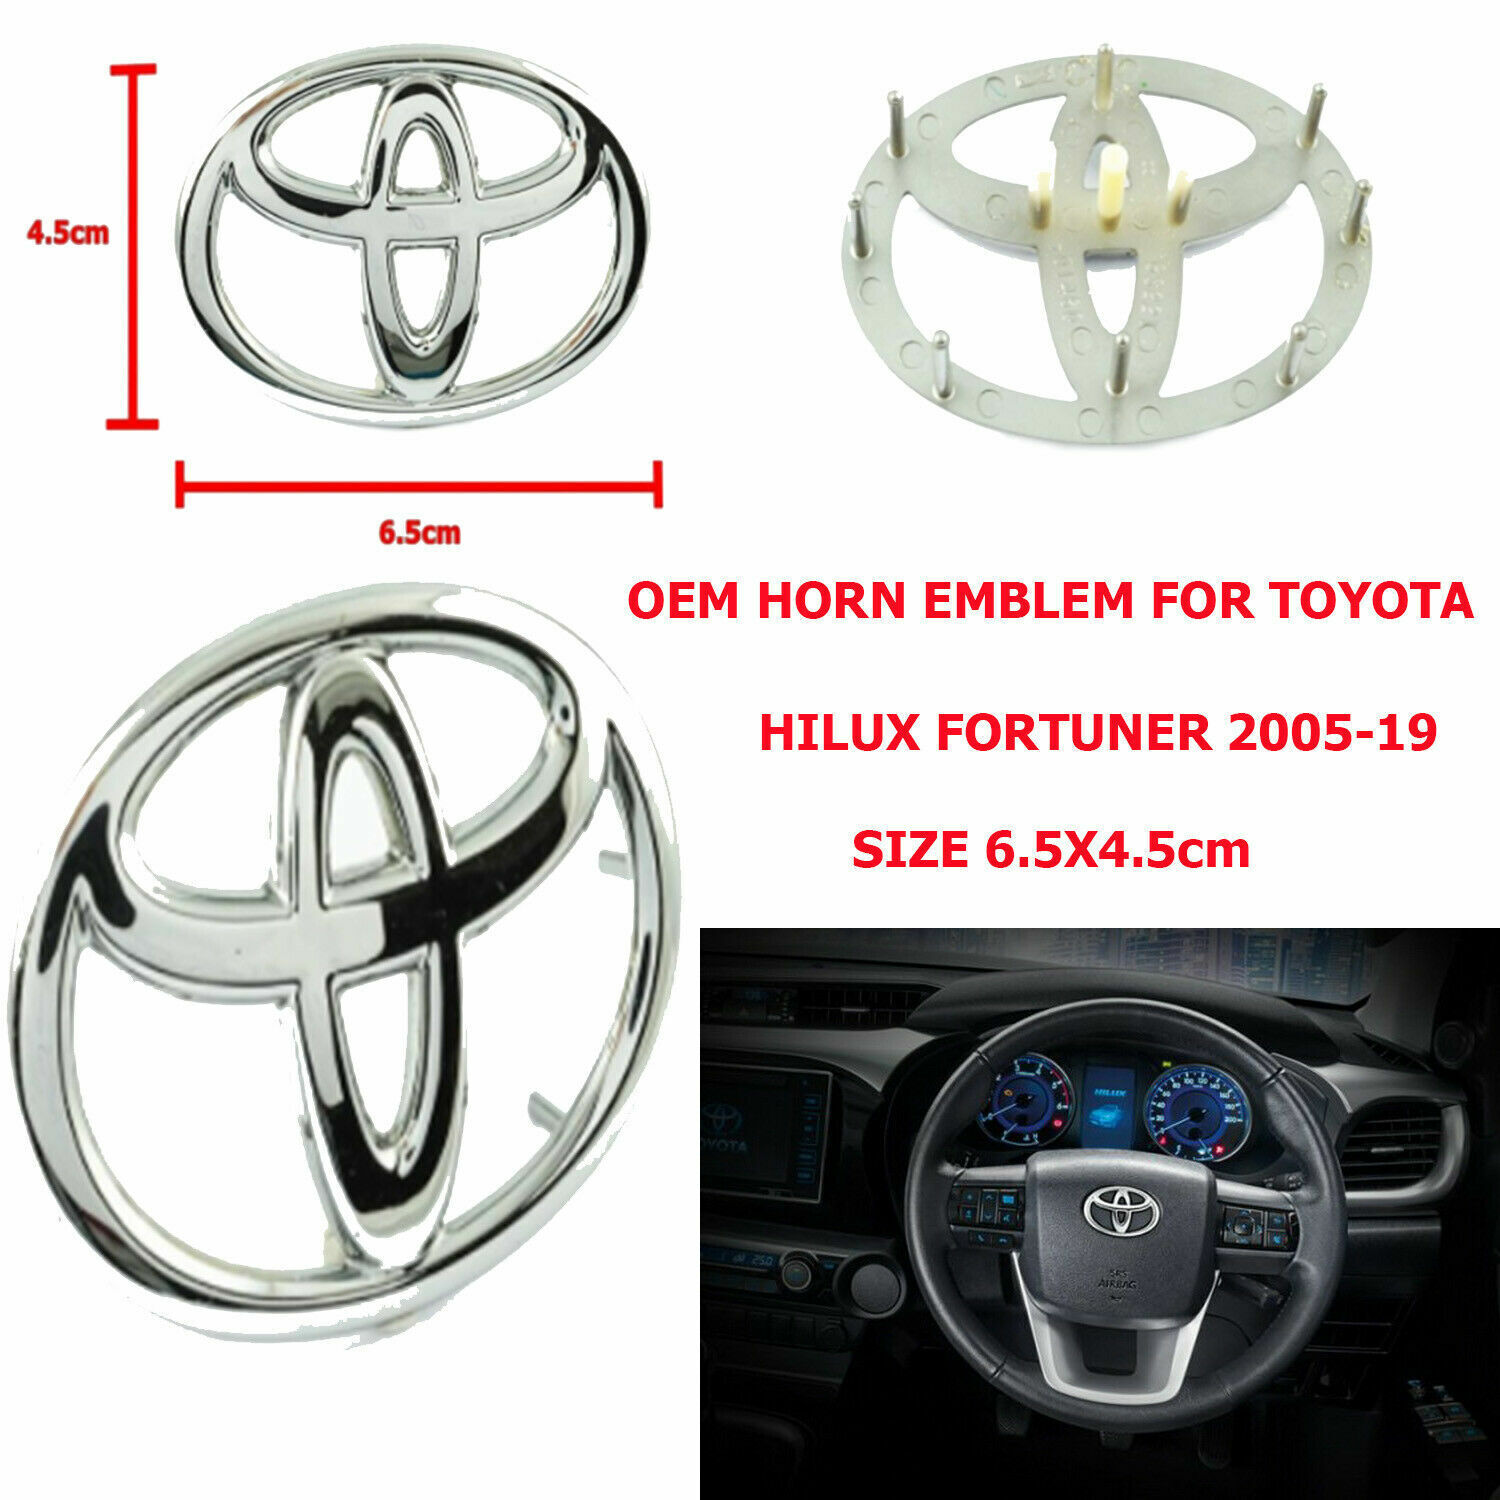 Fits of Oem Steering Wheel Bagde Emblem for Toyota.. Hilux Fortuner 2005-19